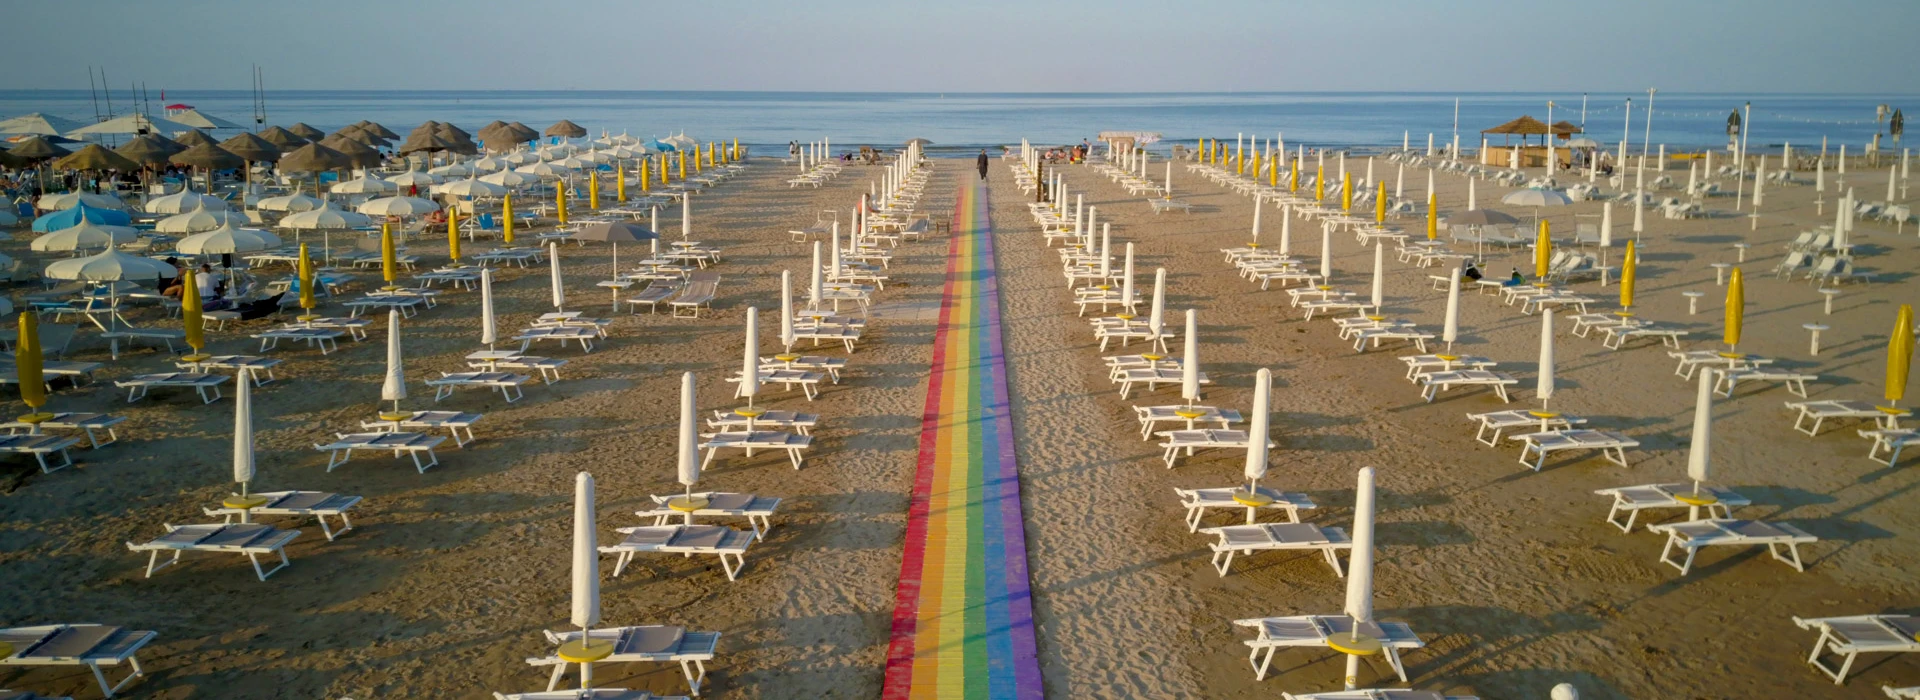 Spiaggia LGBTQ Rimini – La Community 27